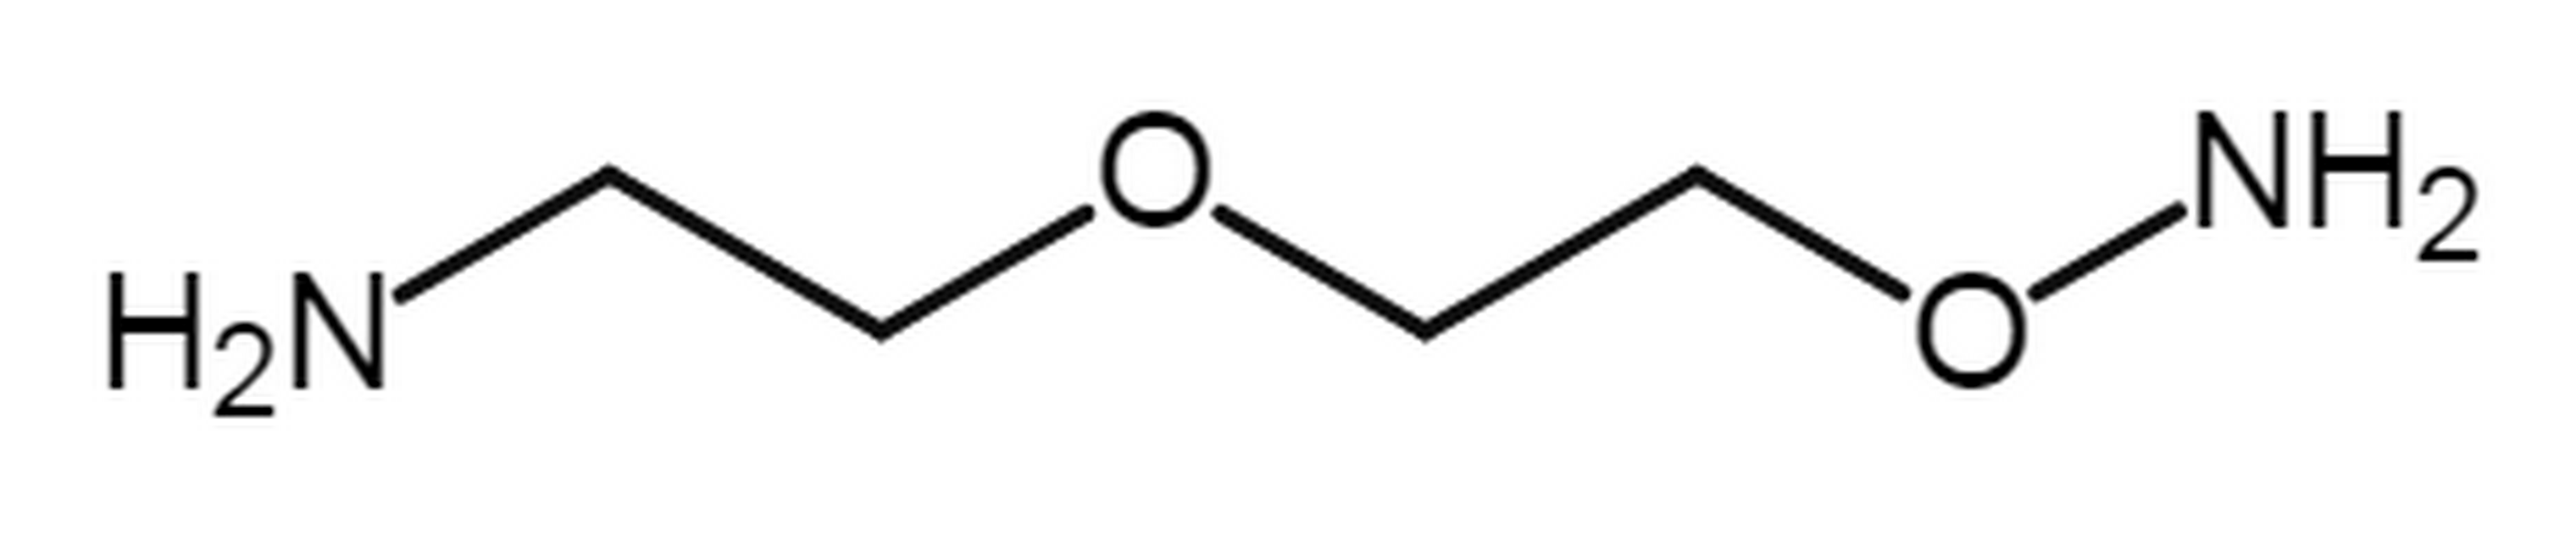 Aminooxy-PEG1-amine HCl salt